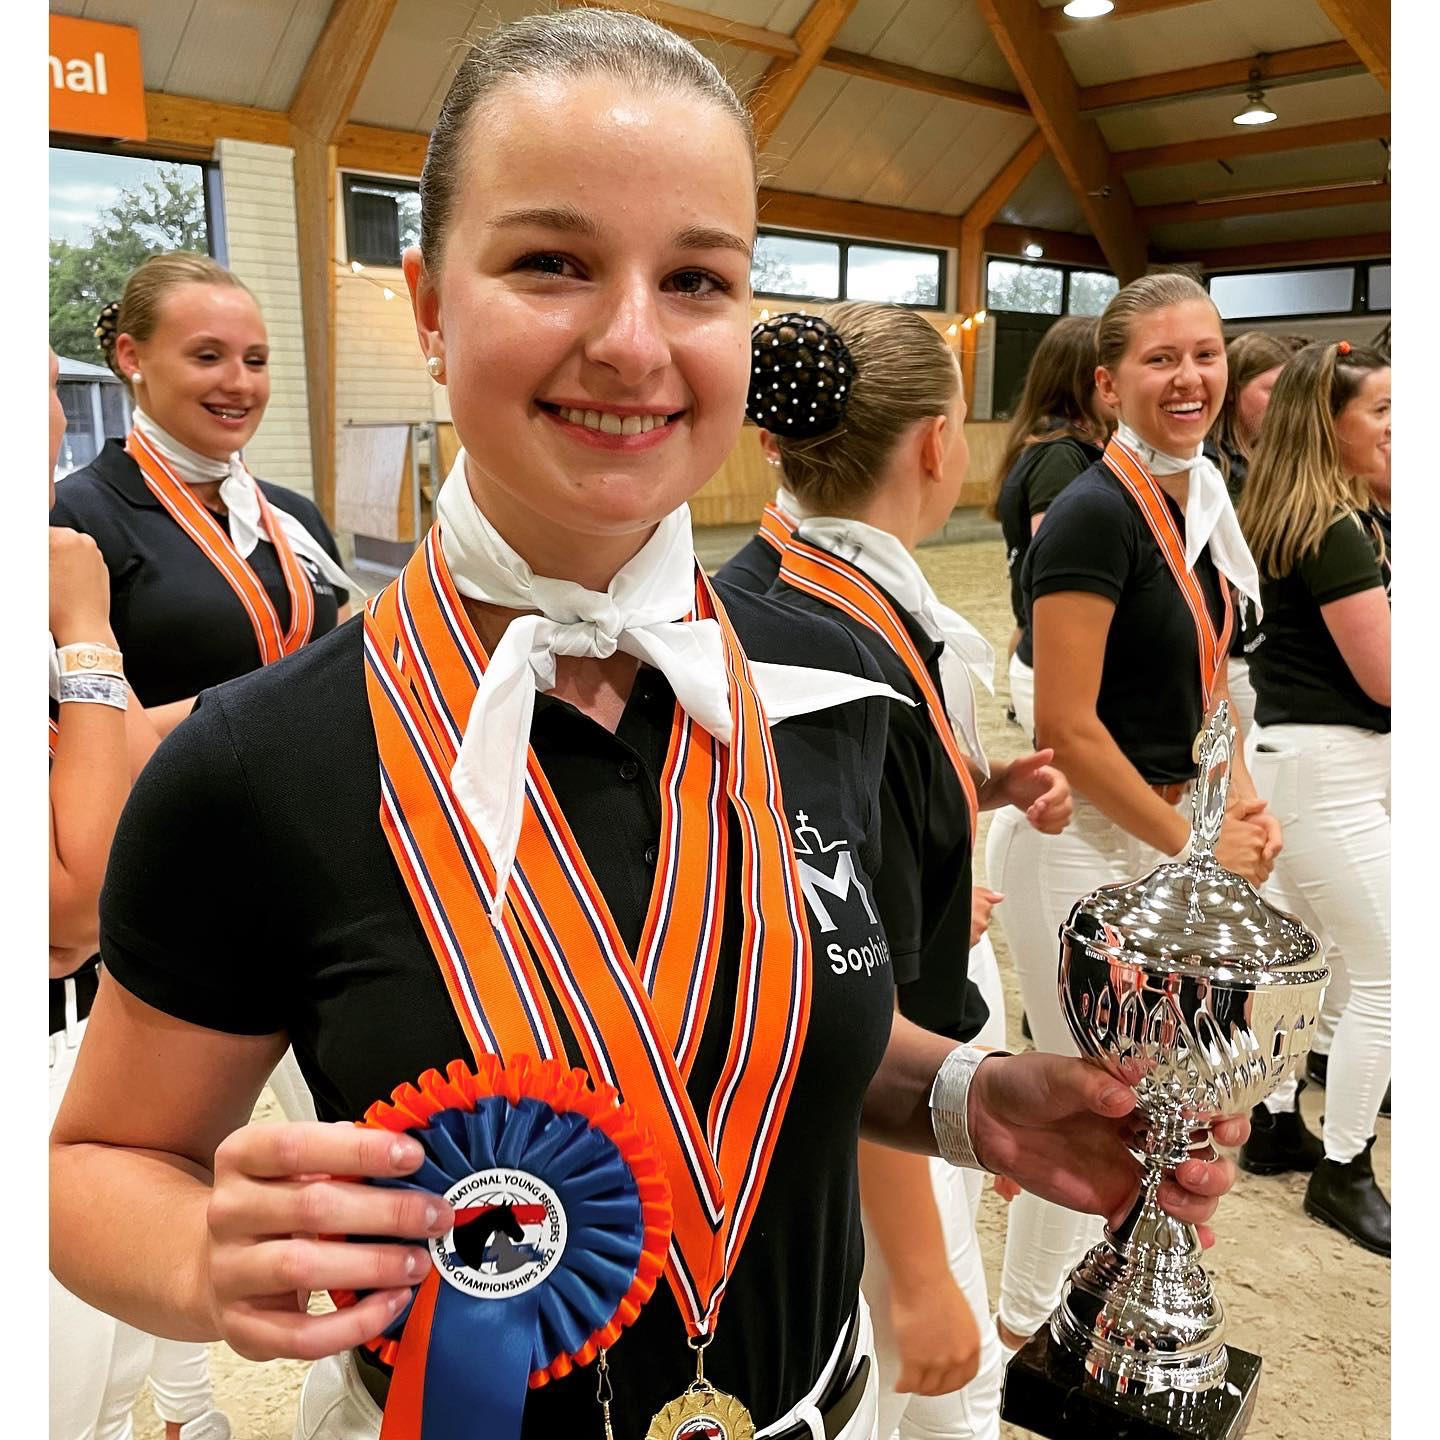 Der Sieg in der Exteurieurbeurteilung bei den Junioren ging an Sophie Brandt vom Mecklenburger Zuchtverband. privat